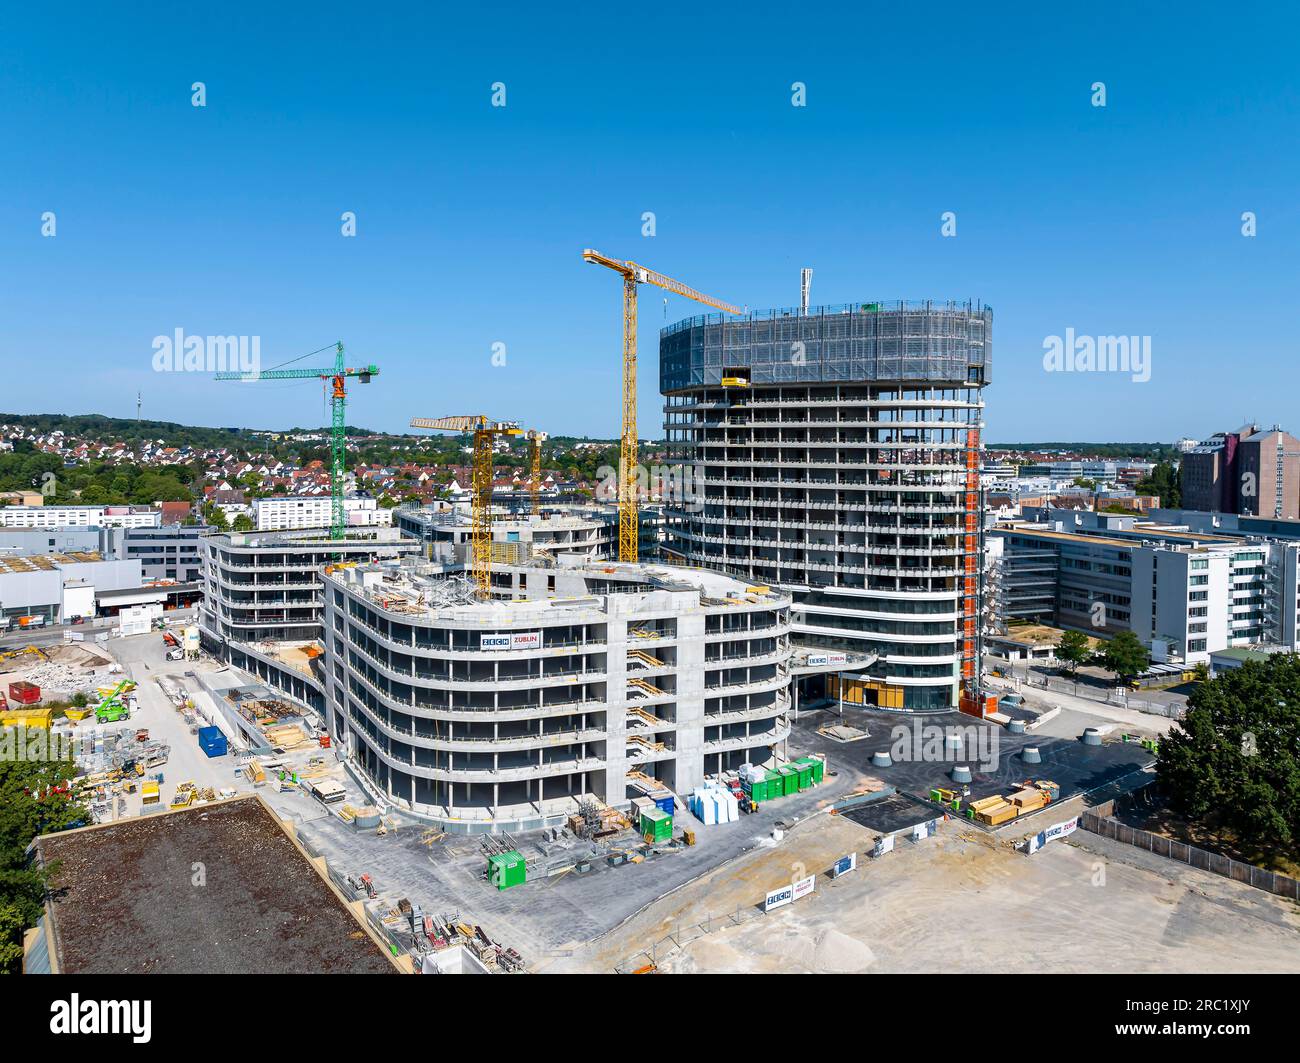 Allianz Park cantiere, conchiglia con gru, il gruppo assicurativo vuole fondere le precedenti sedi di Stoccarda qui, Vaihingen, Stoccarda Foto Stock